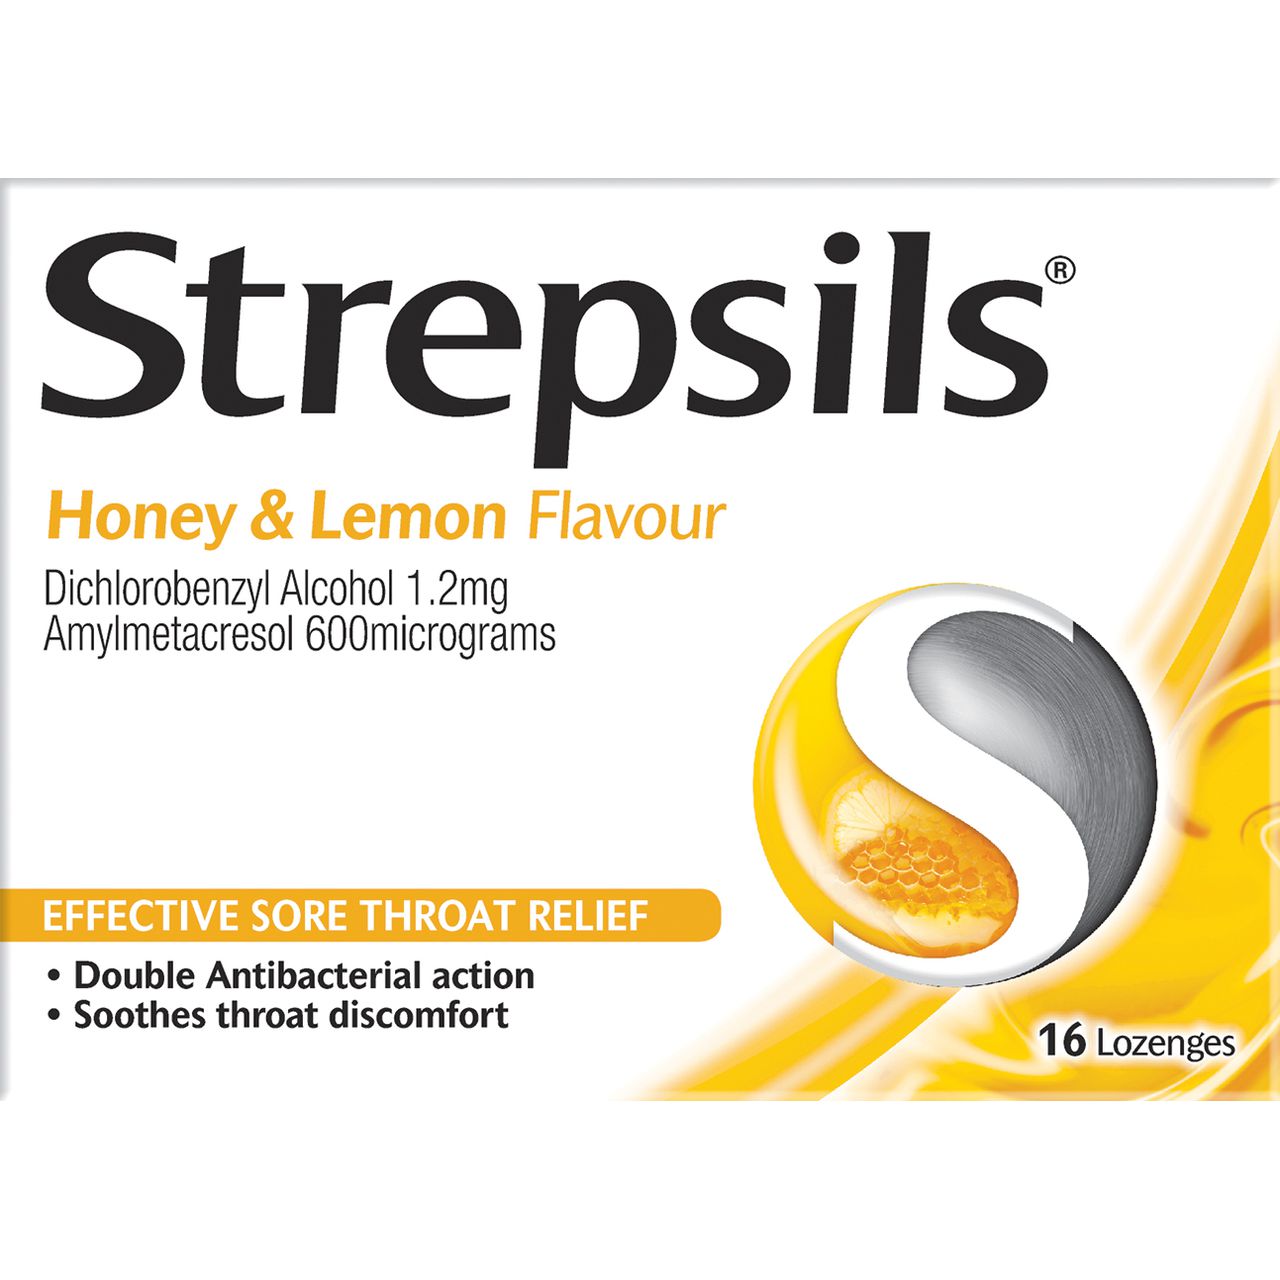 Strepsils Honey and Lemon Flavour Lozenges - 16s